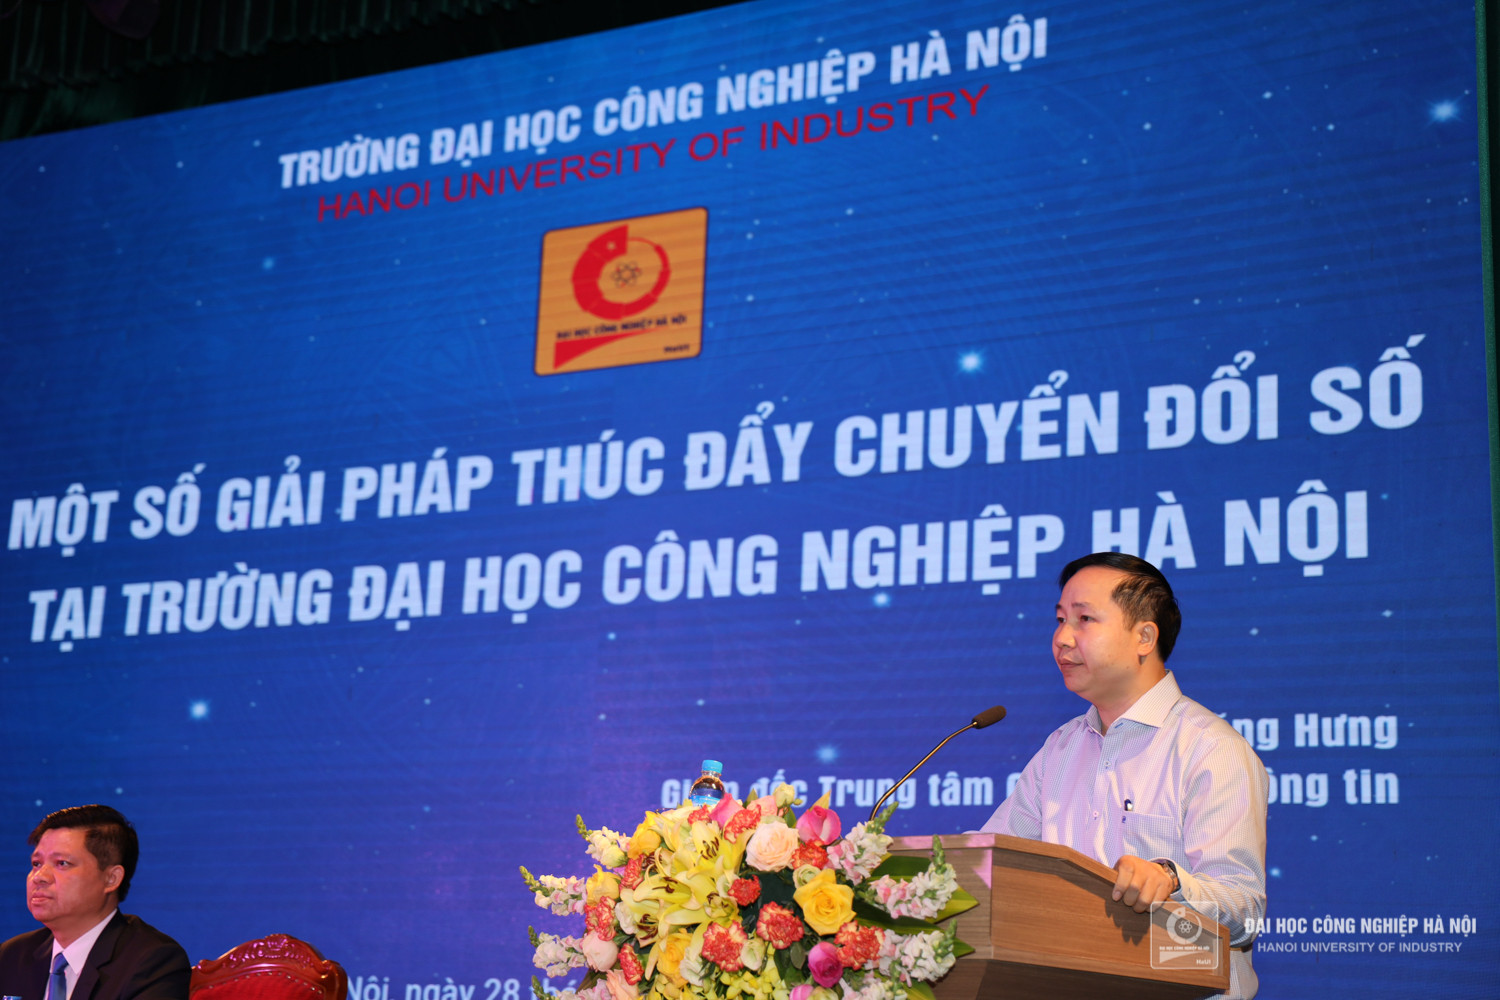 TS.Phan Đăng Hưng - Giám đốc Trung tâm trình bày tham luận `Một số giải pháp thúc đẩy chuyển đổi số tại Trường Đại học Công nghiệp Hà Nội`